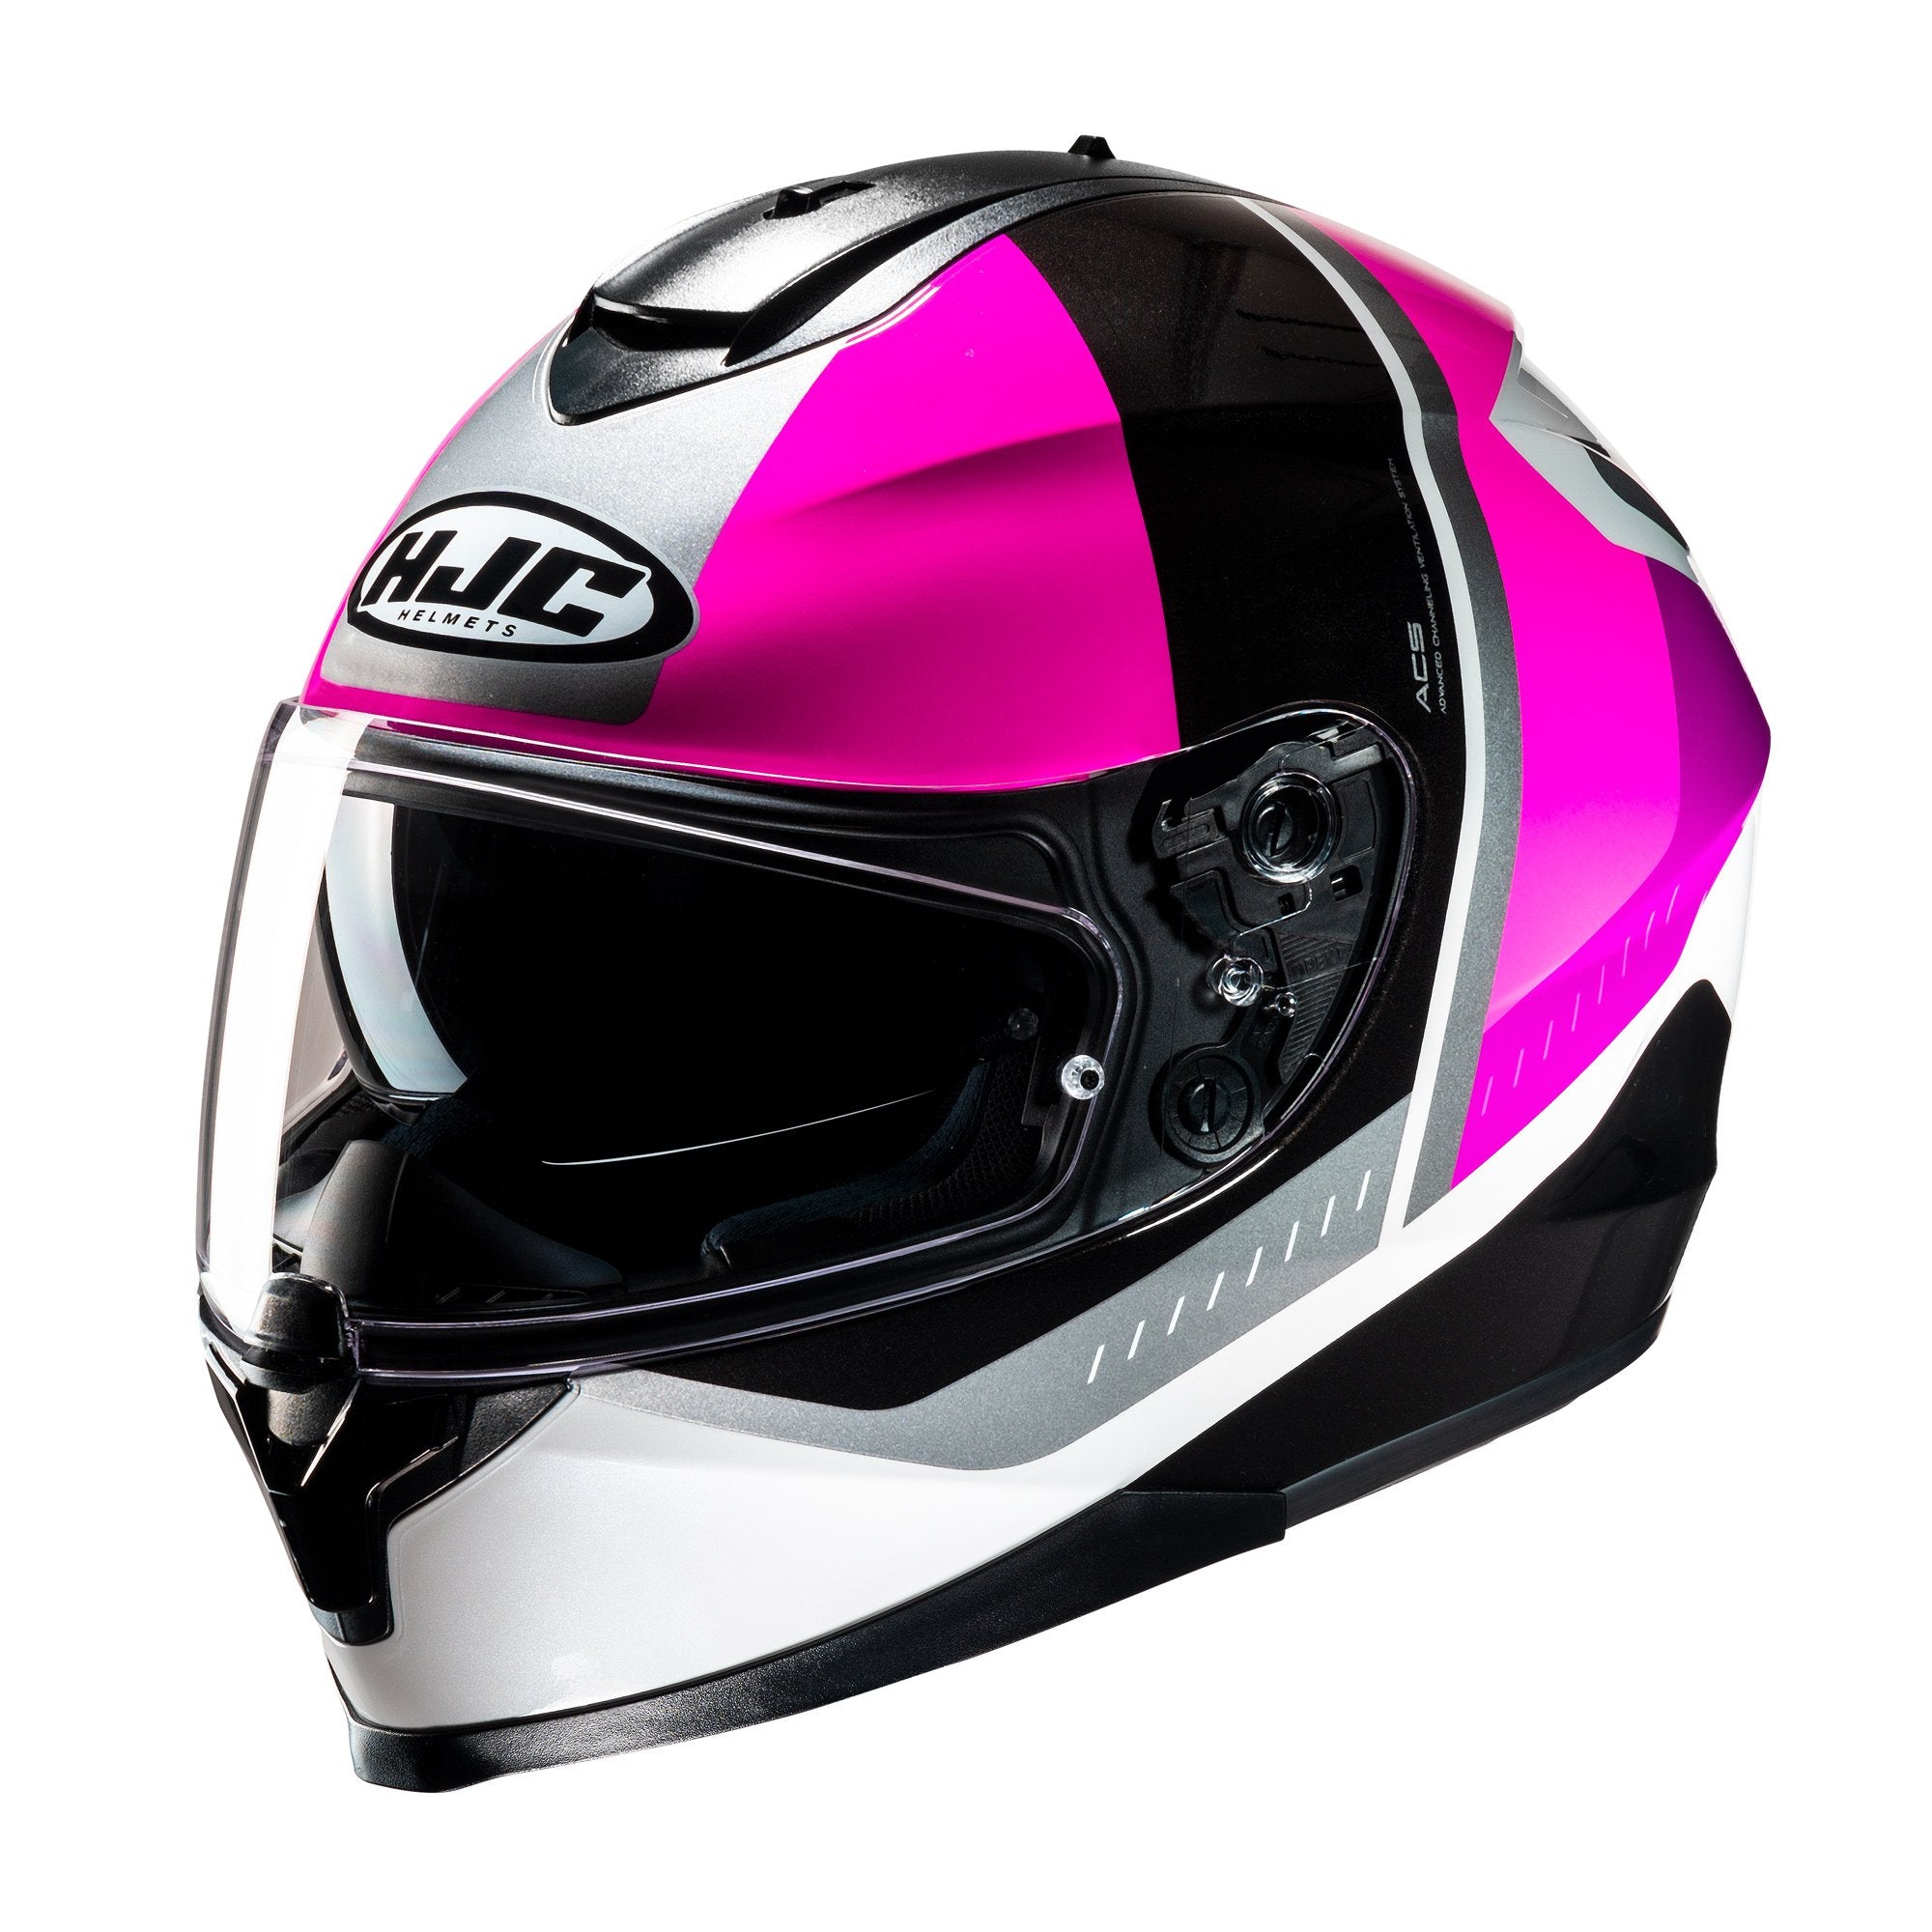  Pink Motorcycle Helmet PIC